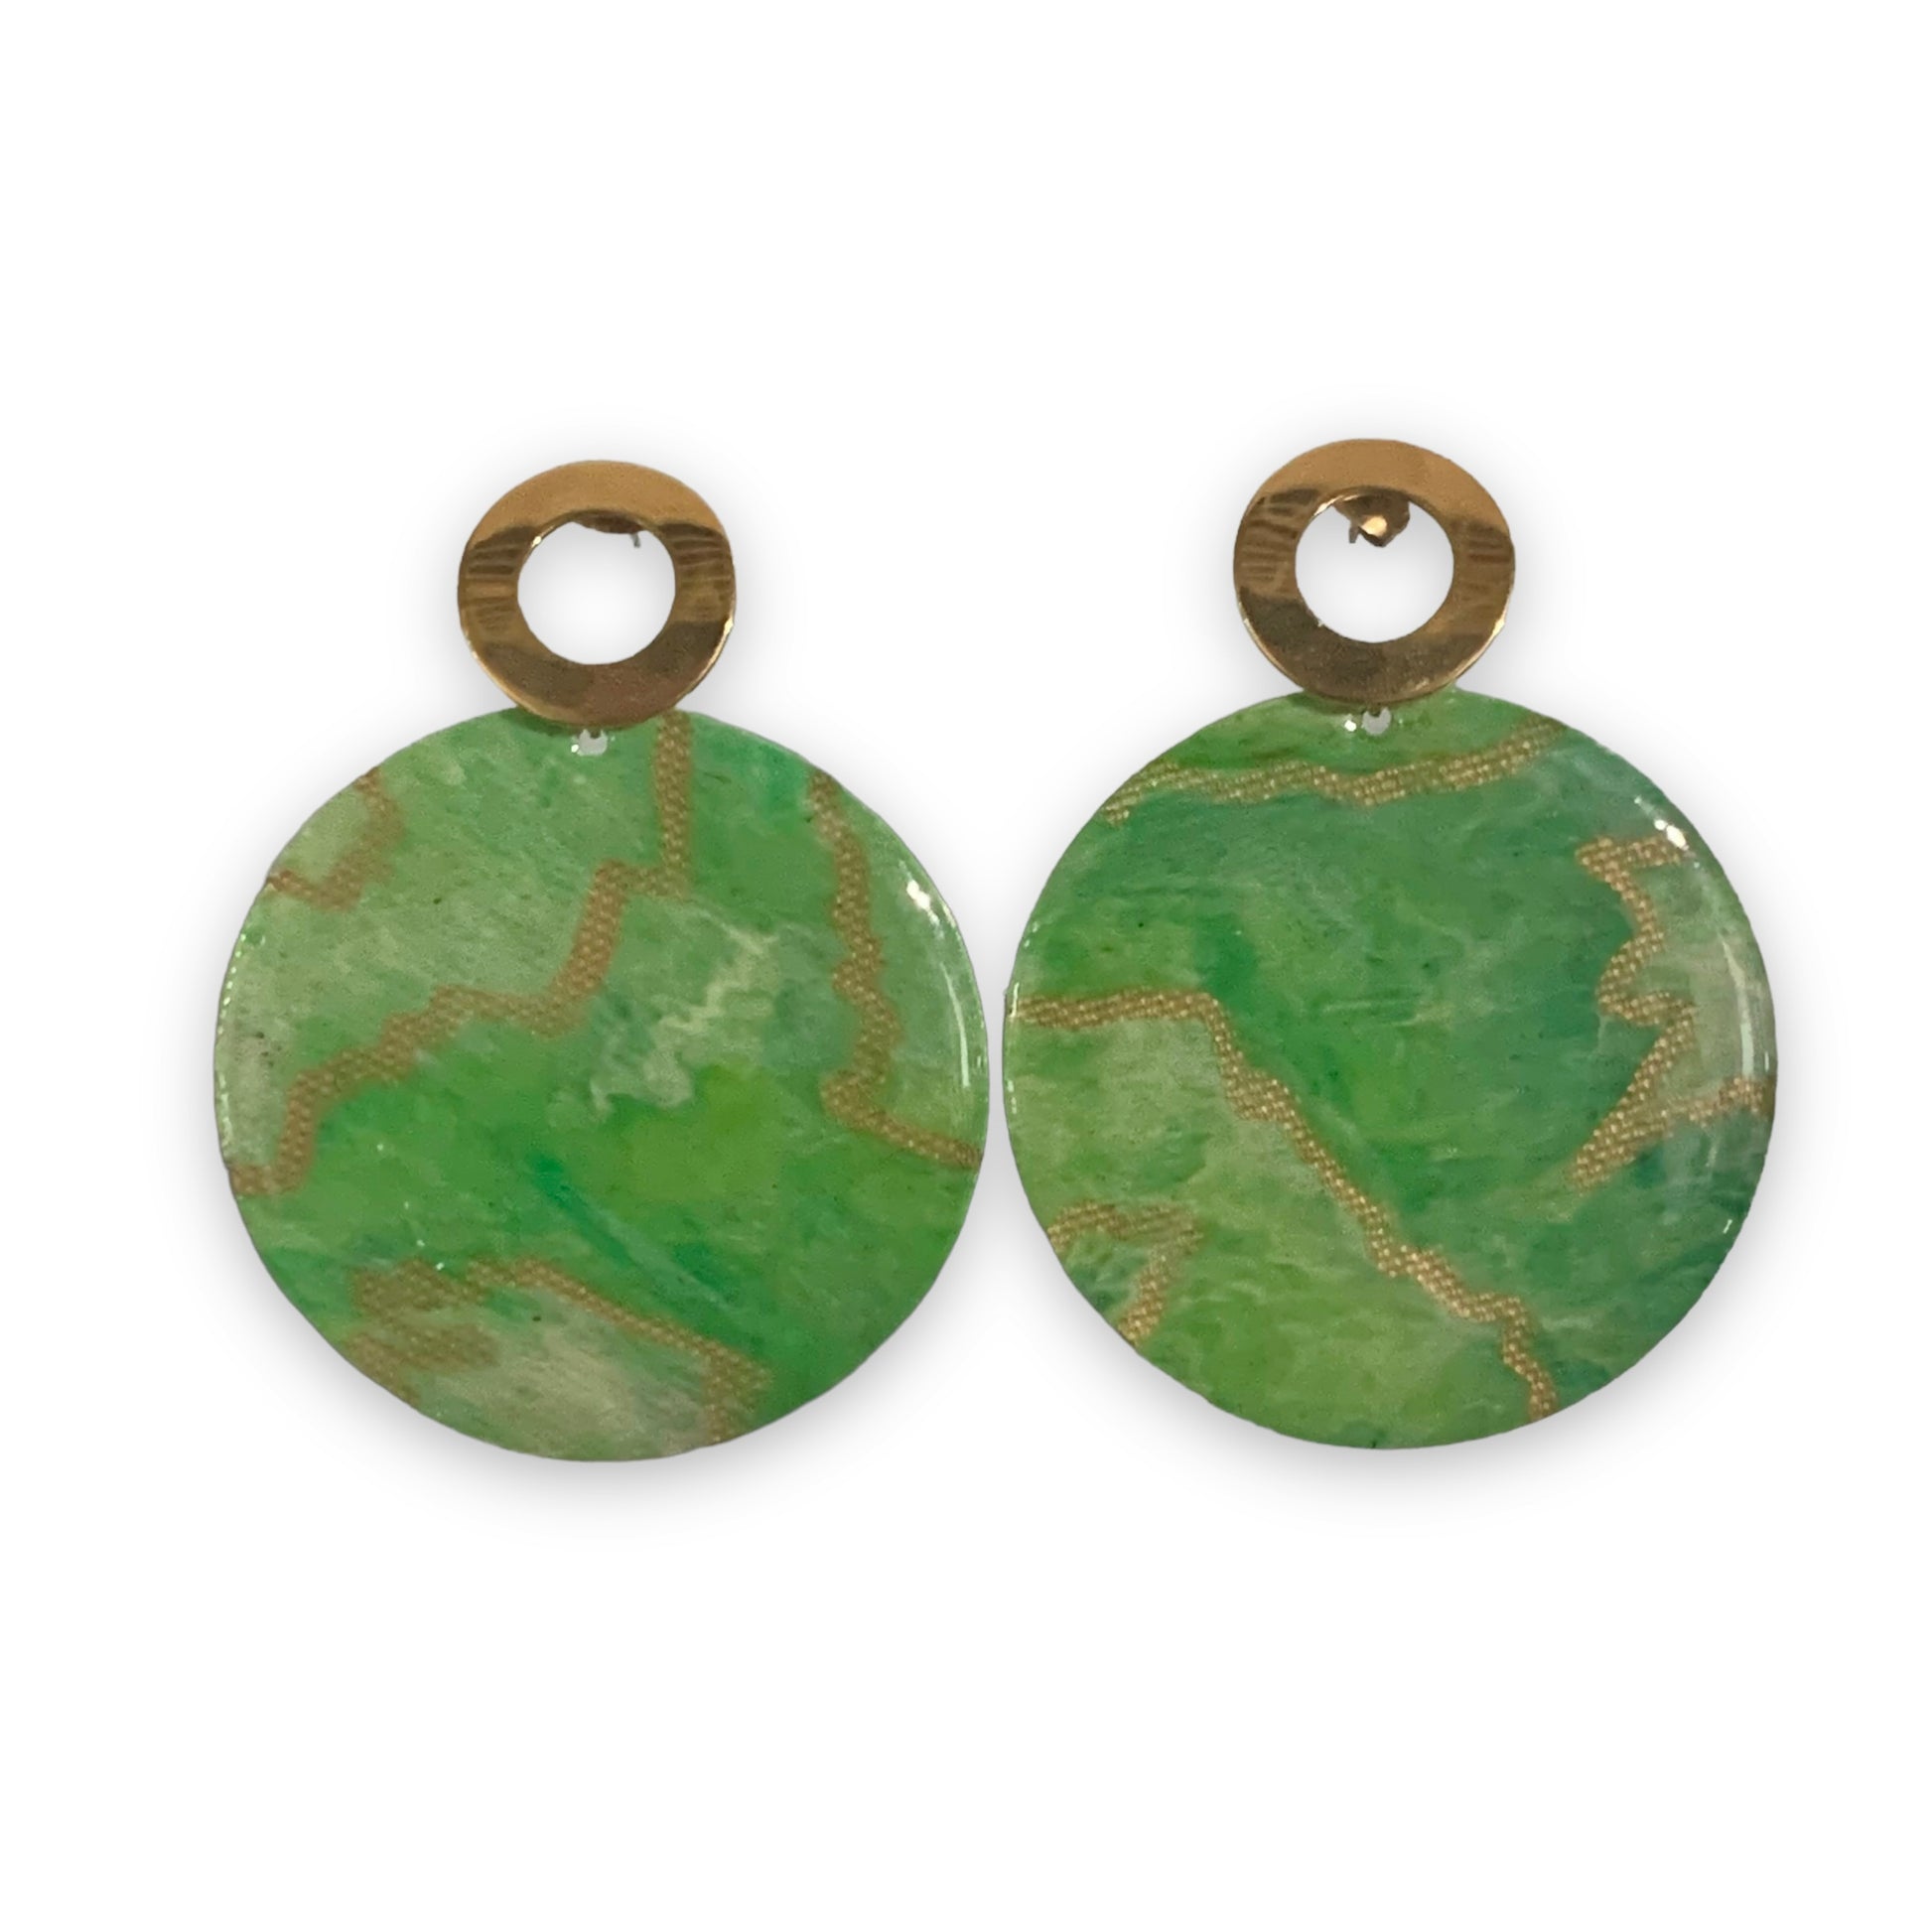 Recycled Plastic Bottle tops Green Gold Handmade earrings Studs Christmas Gift for environmental lover handmade in London artesian  